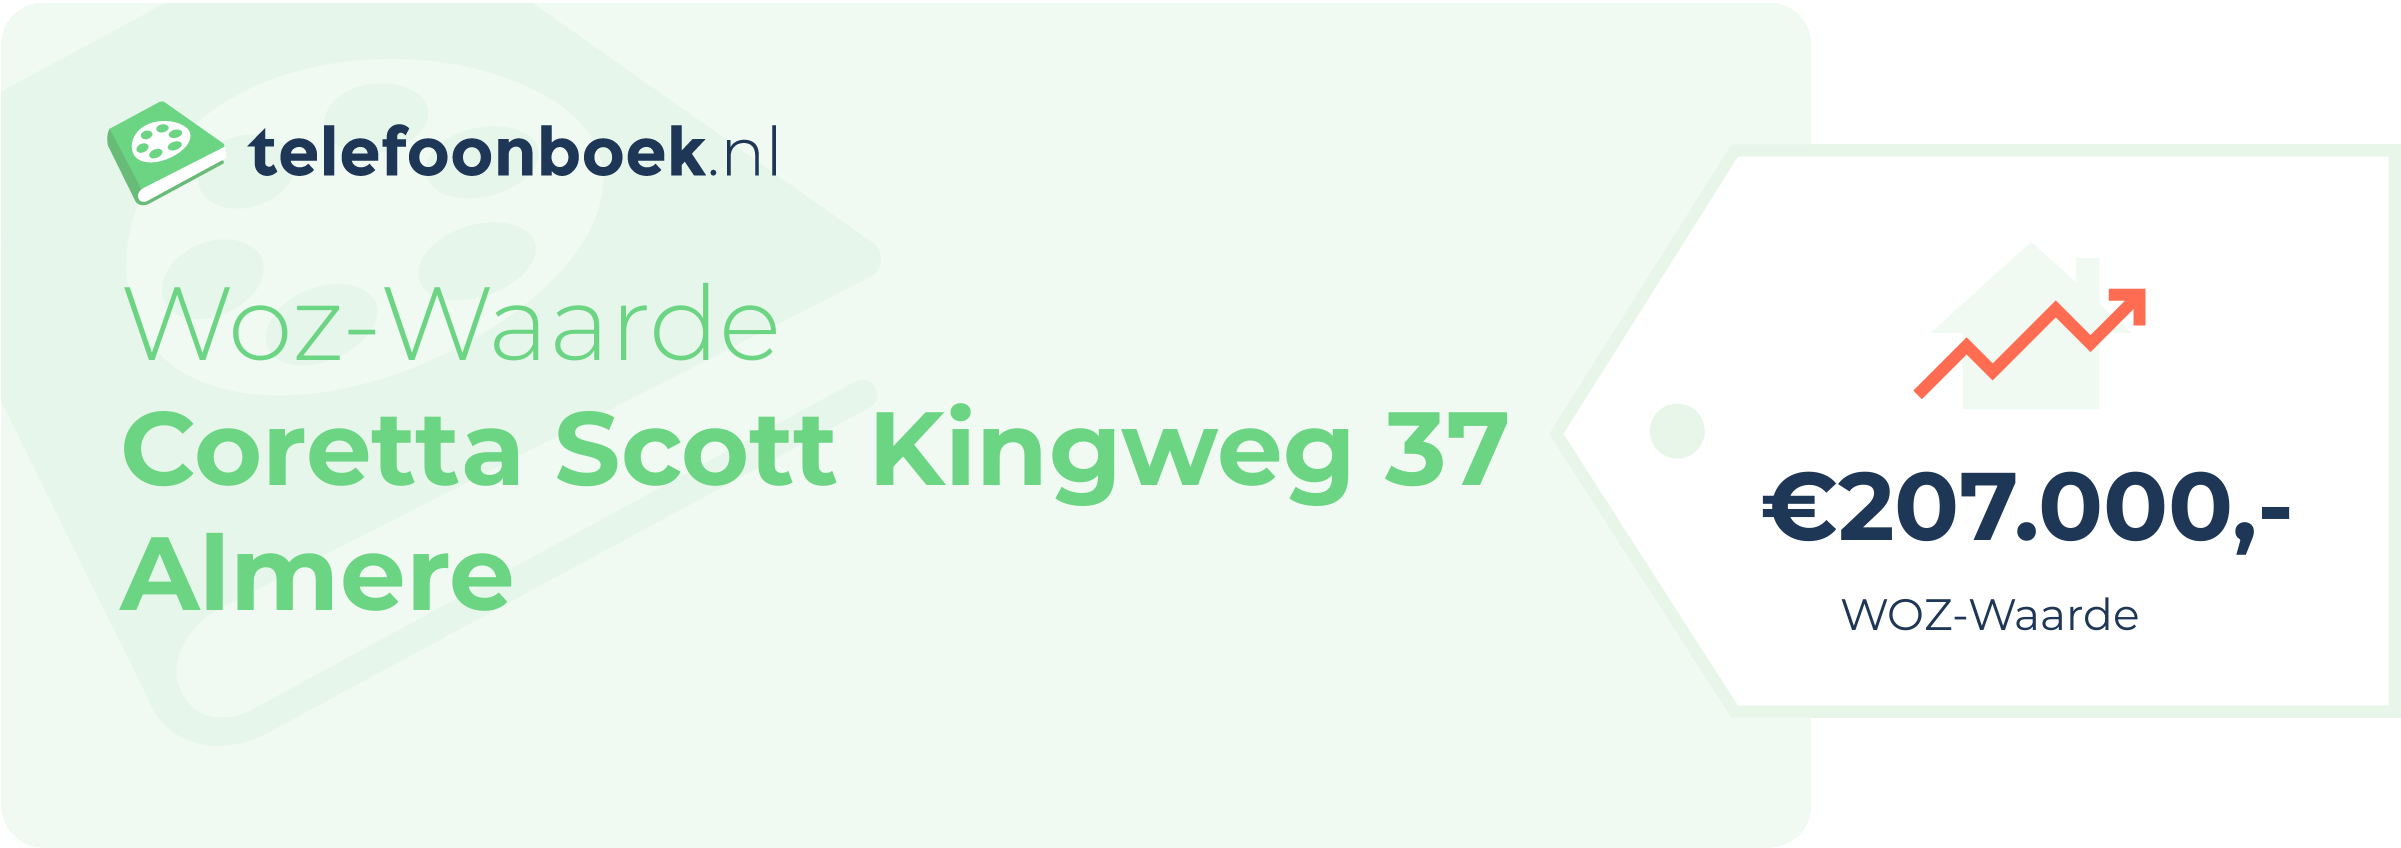 WOZ-waarde Coretta Scott Kingweg 37 Almere